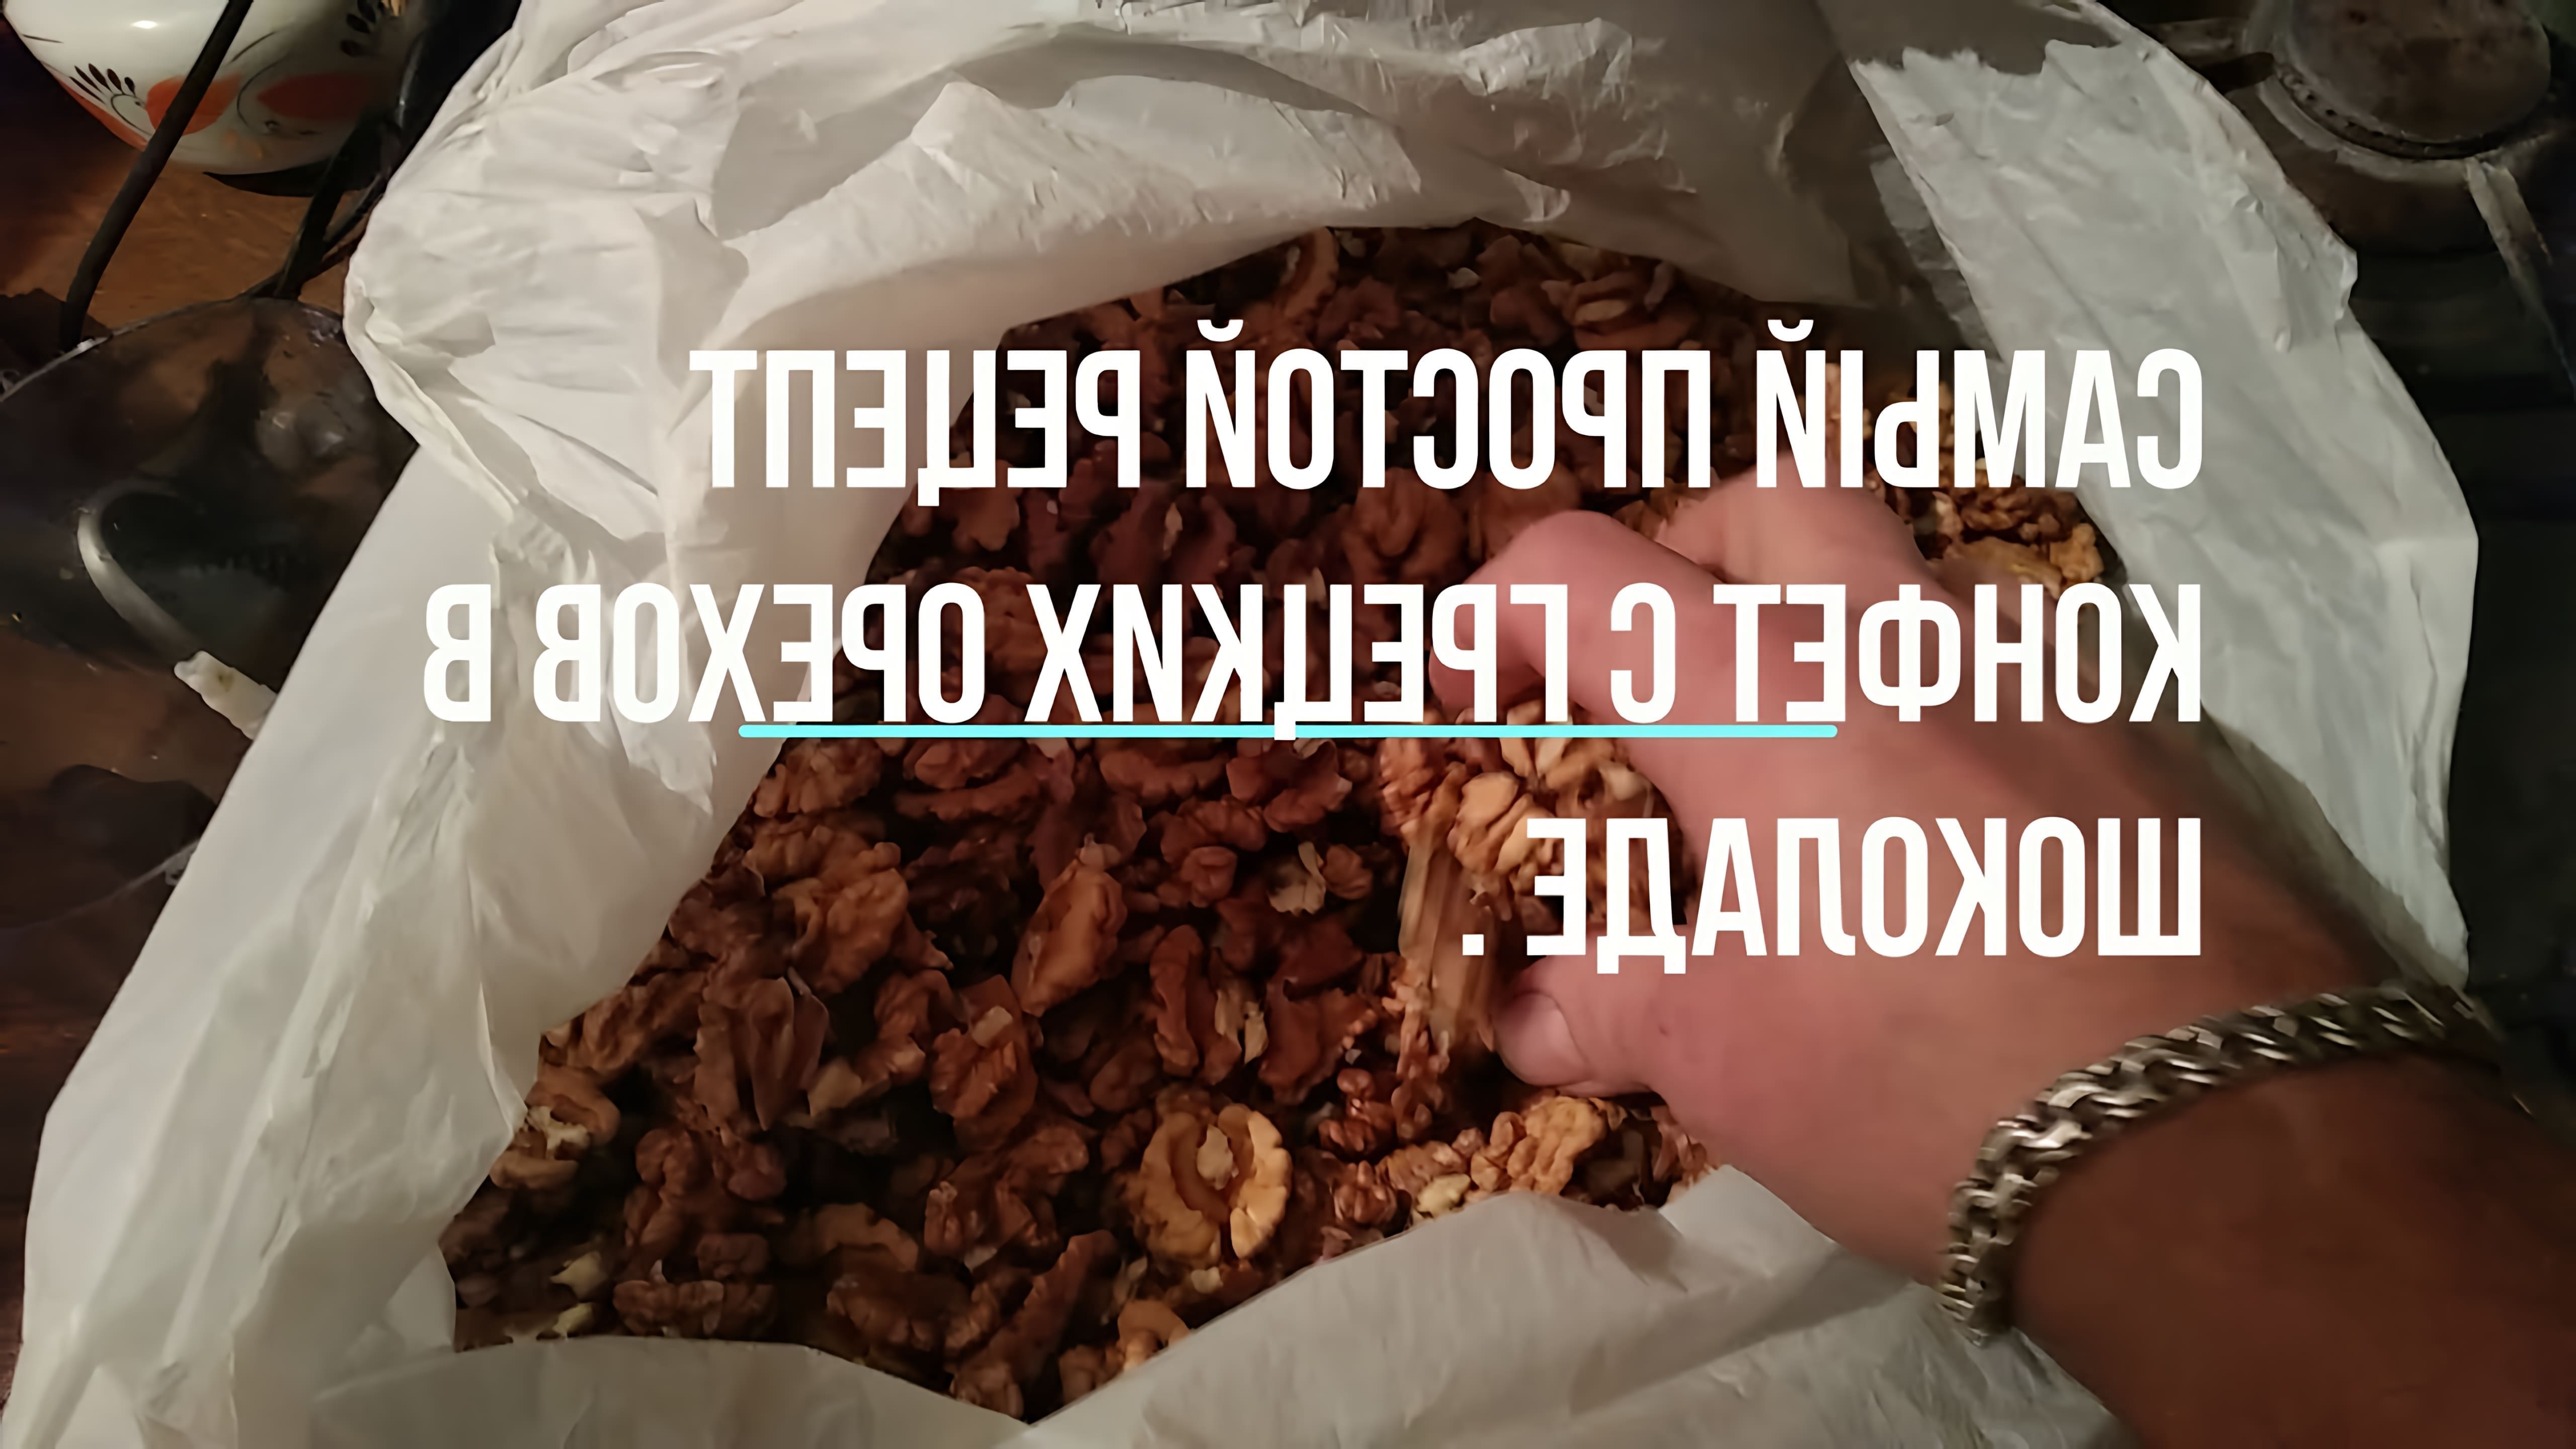 В этом видео демонстрируется простой рецепт конфет с грецких орехов в шоколаде